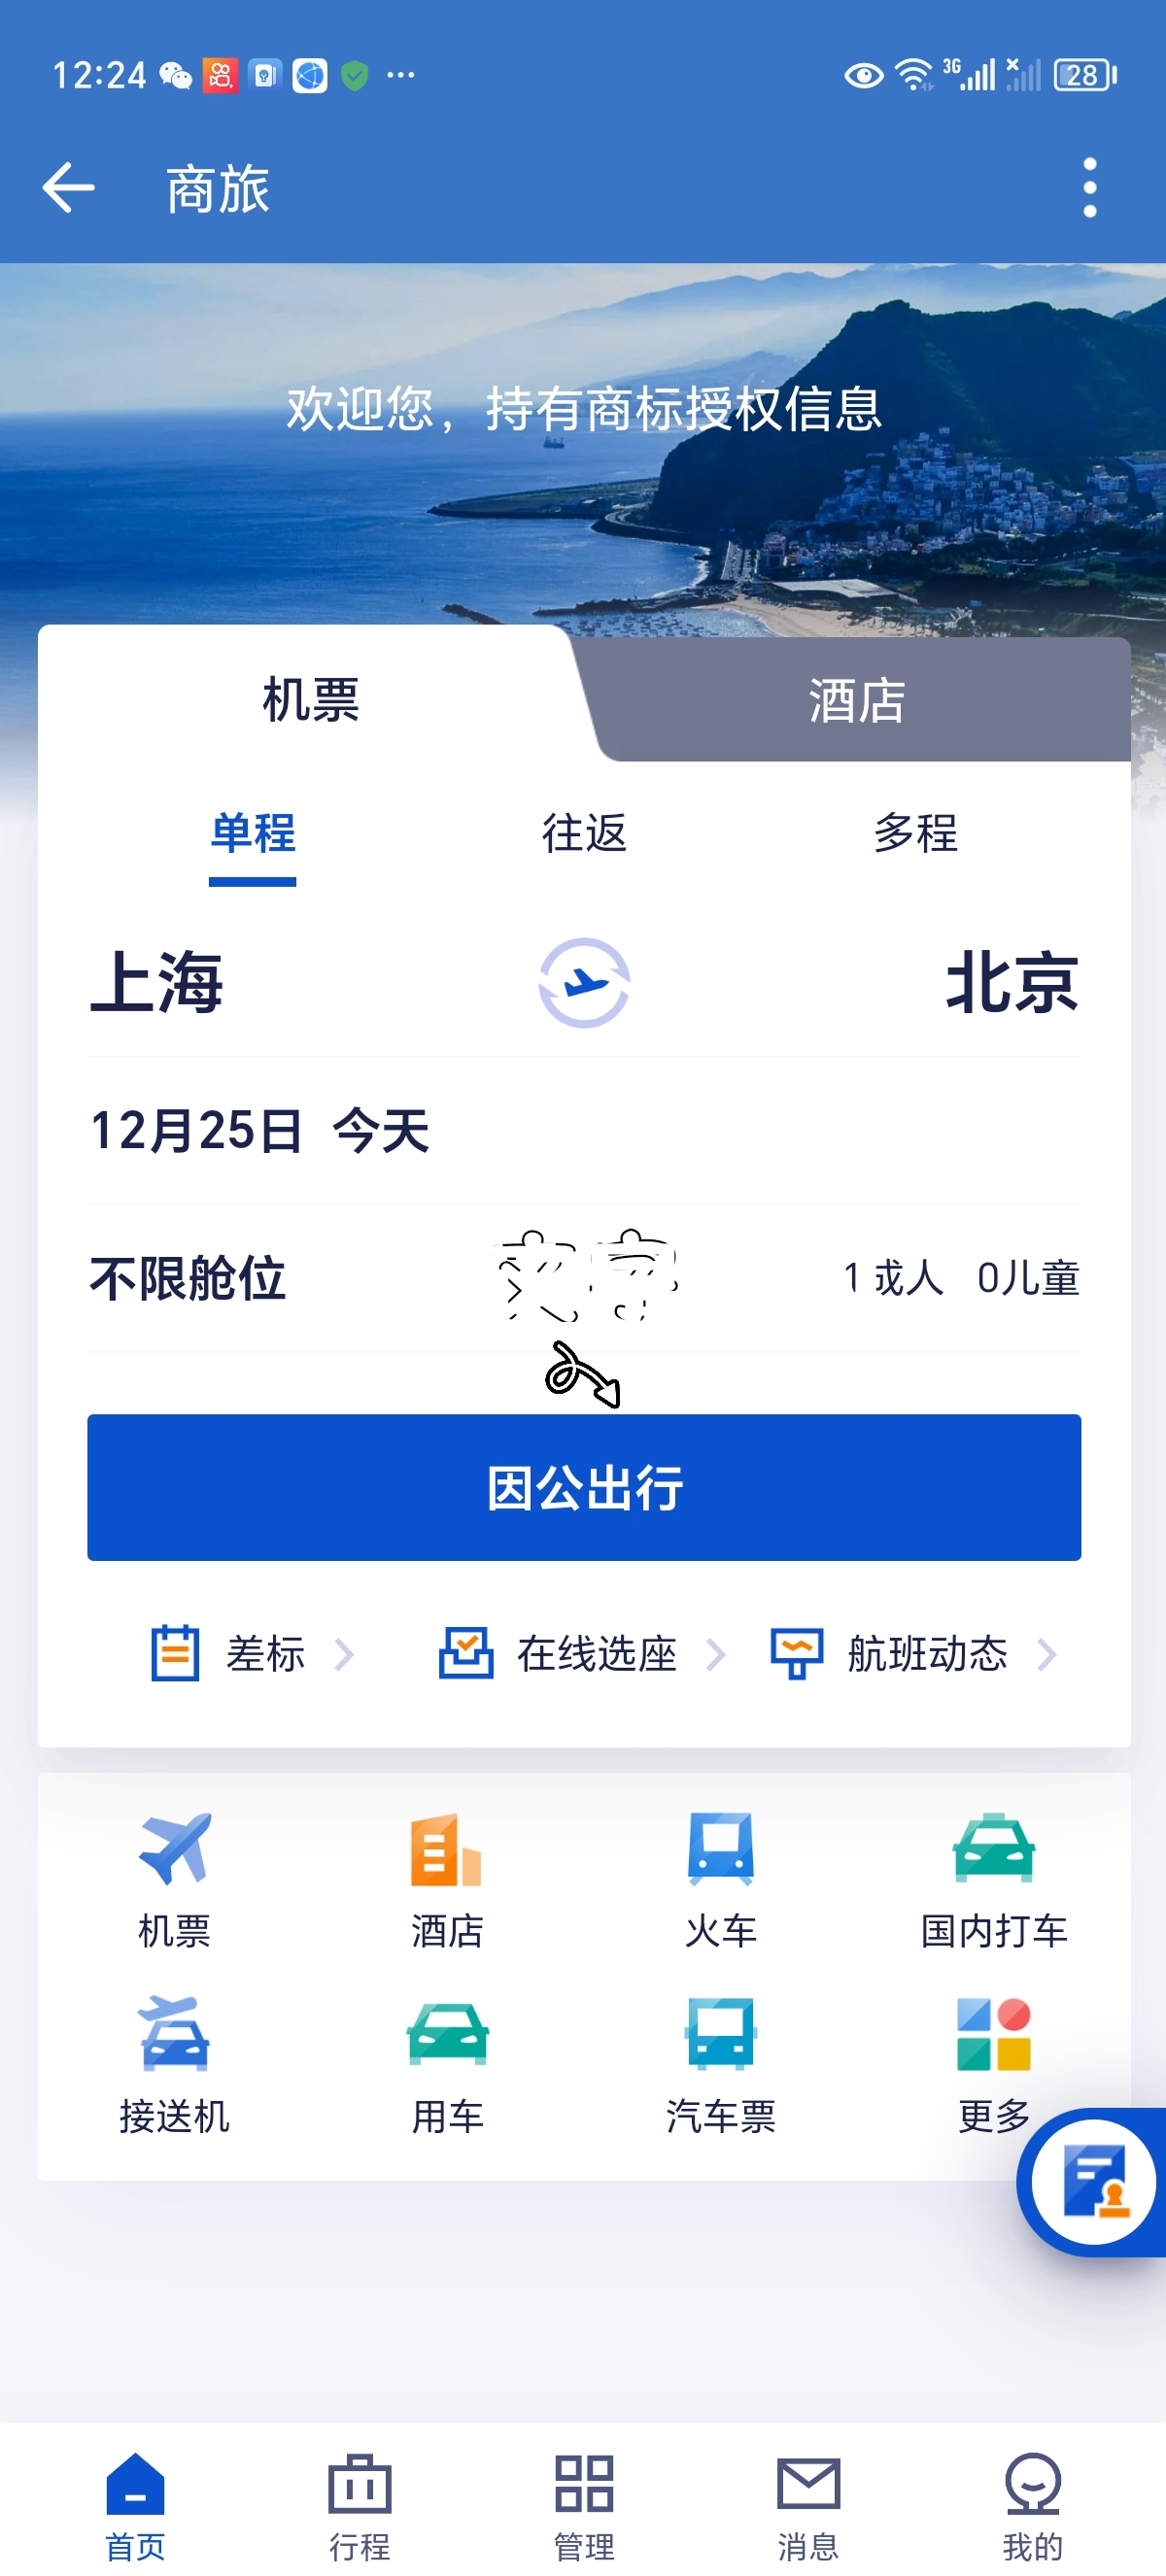 携程之旅特有商标受权信息这是我的视频号@北京旅游科技